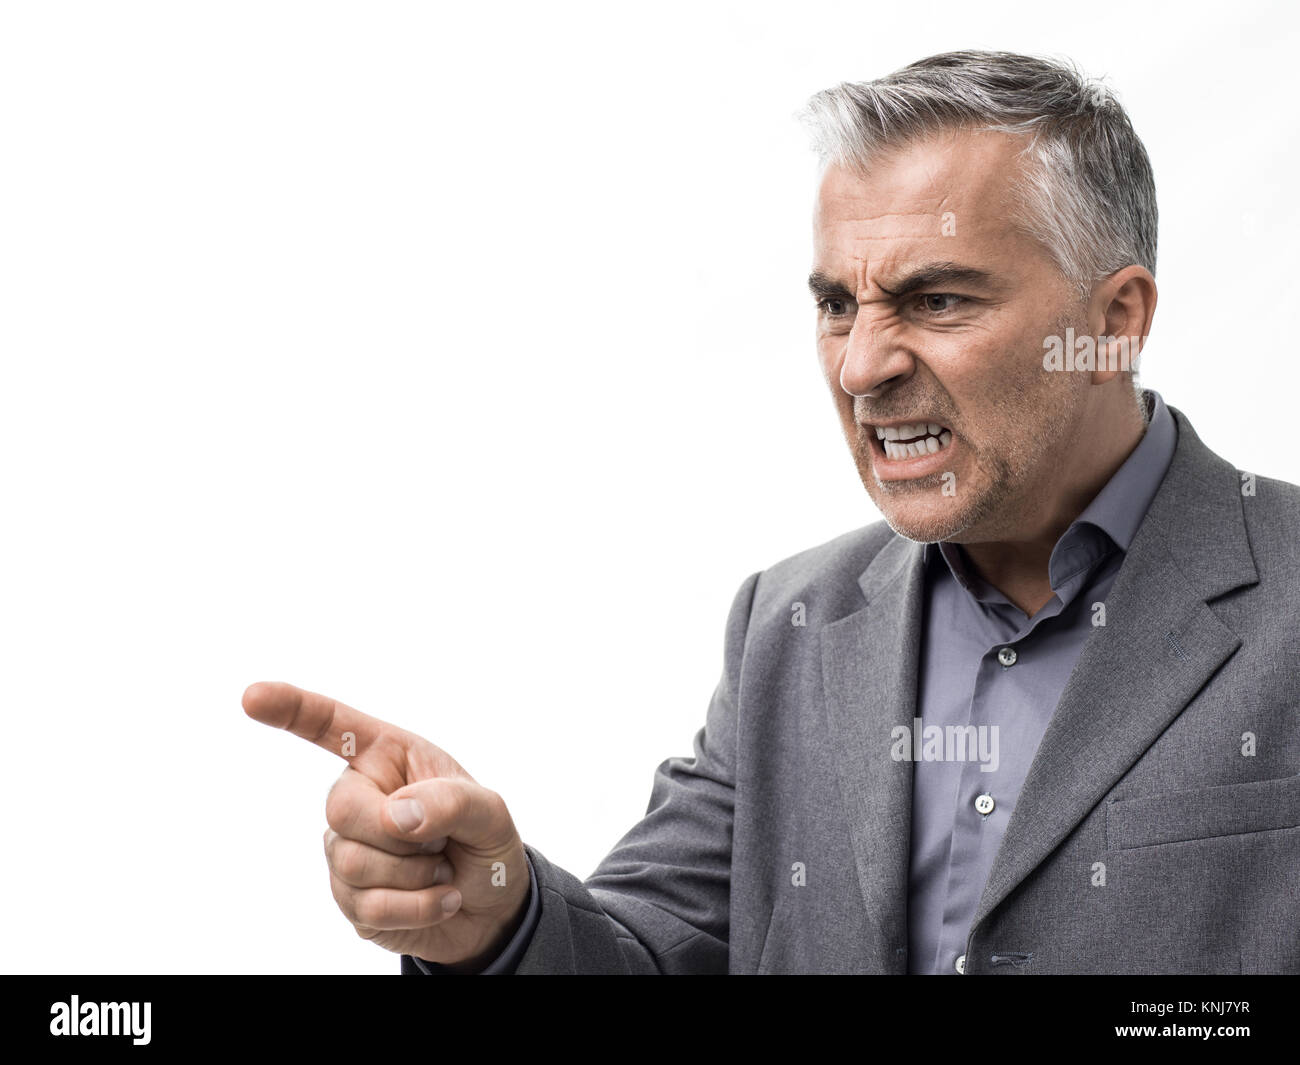 Jefe enojado agresivo dando una reprimenda y argumentando, él está apuntando con el dedo y gritar Foto de stock